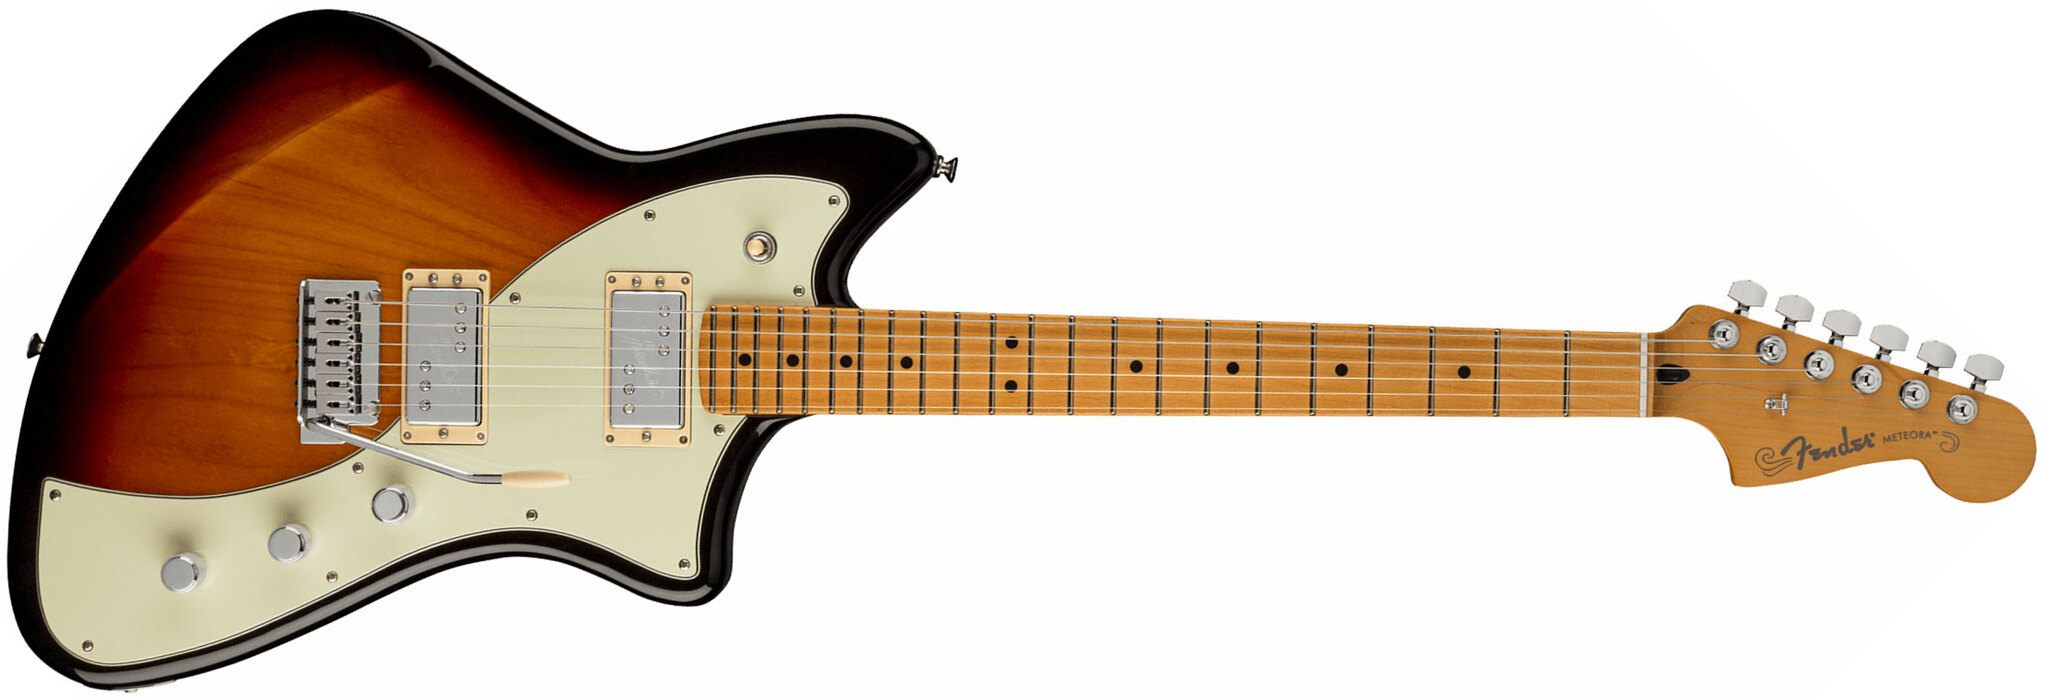 Fender Meteora Player Plus Hh Mex 2h Ht Mn - 3-color Sunburst - Retro rock electric guitar - Main picture